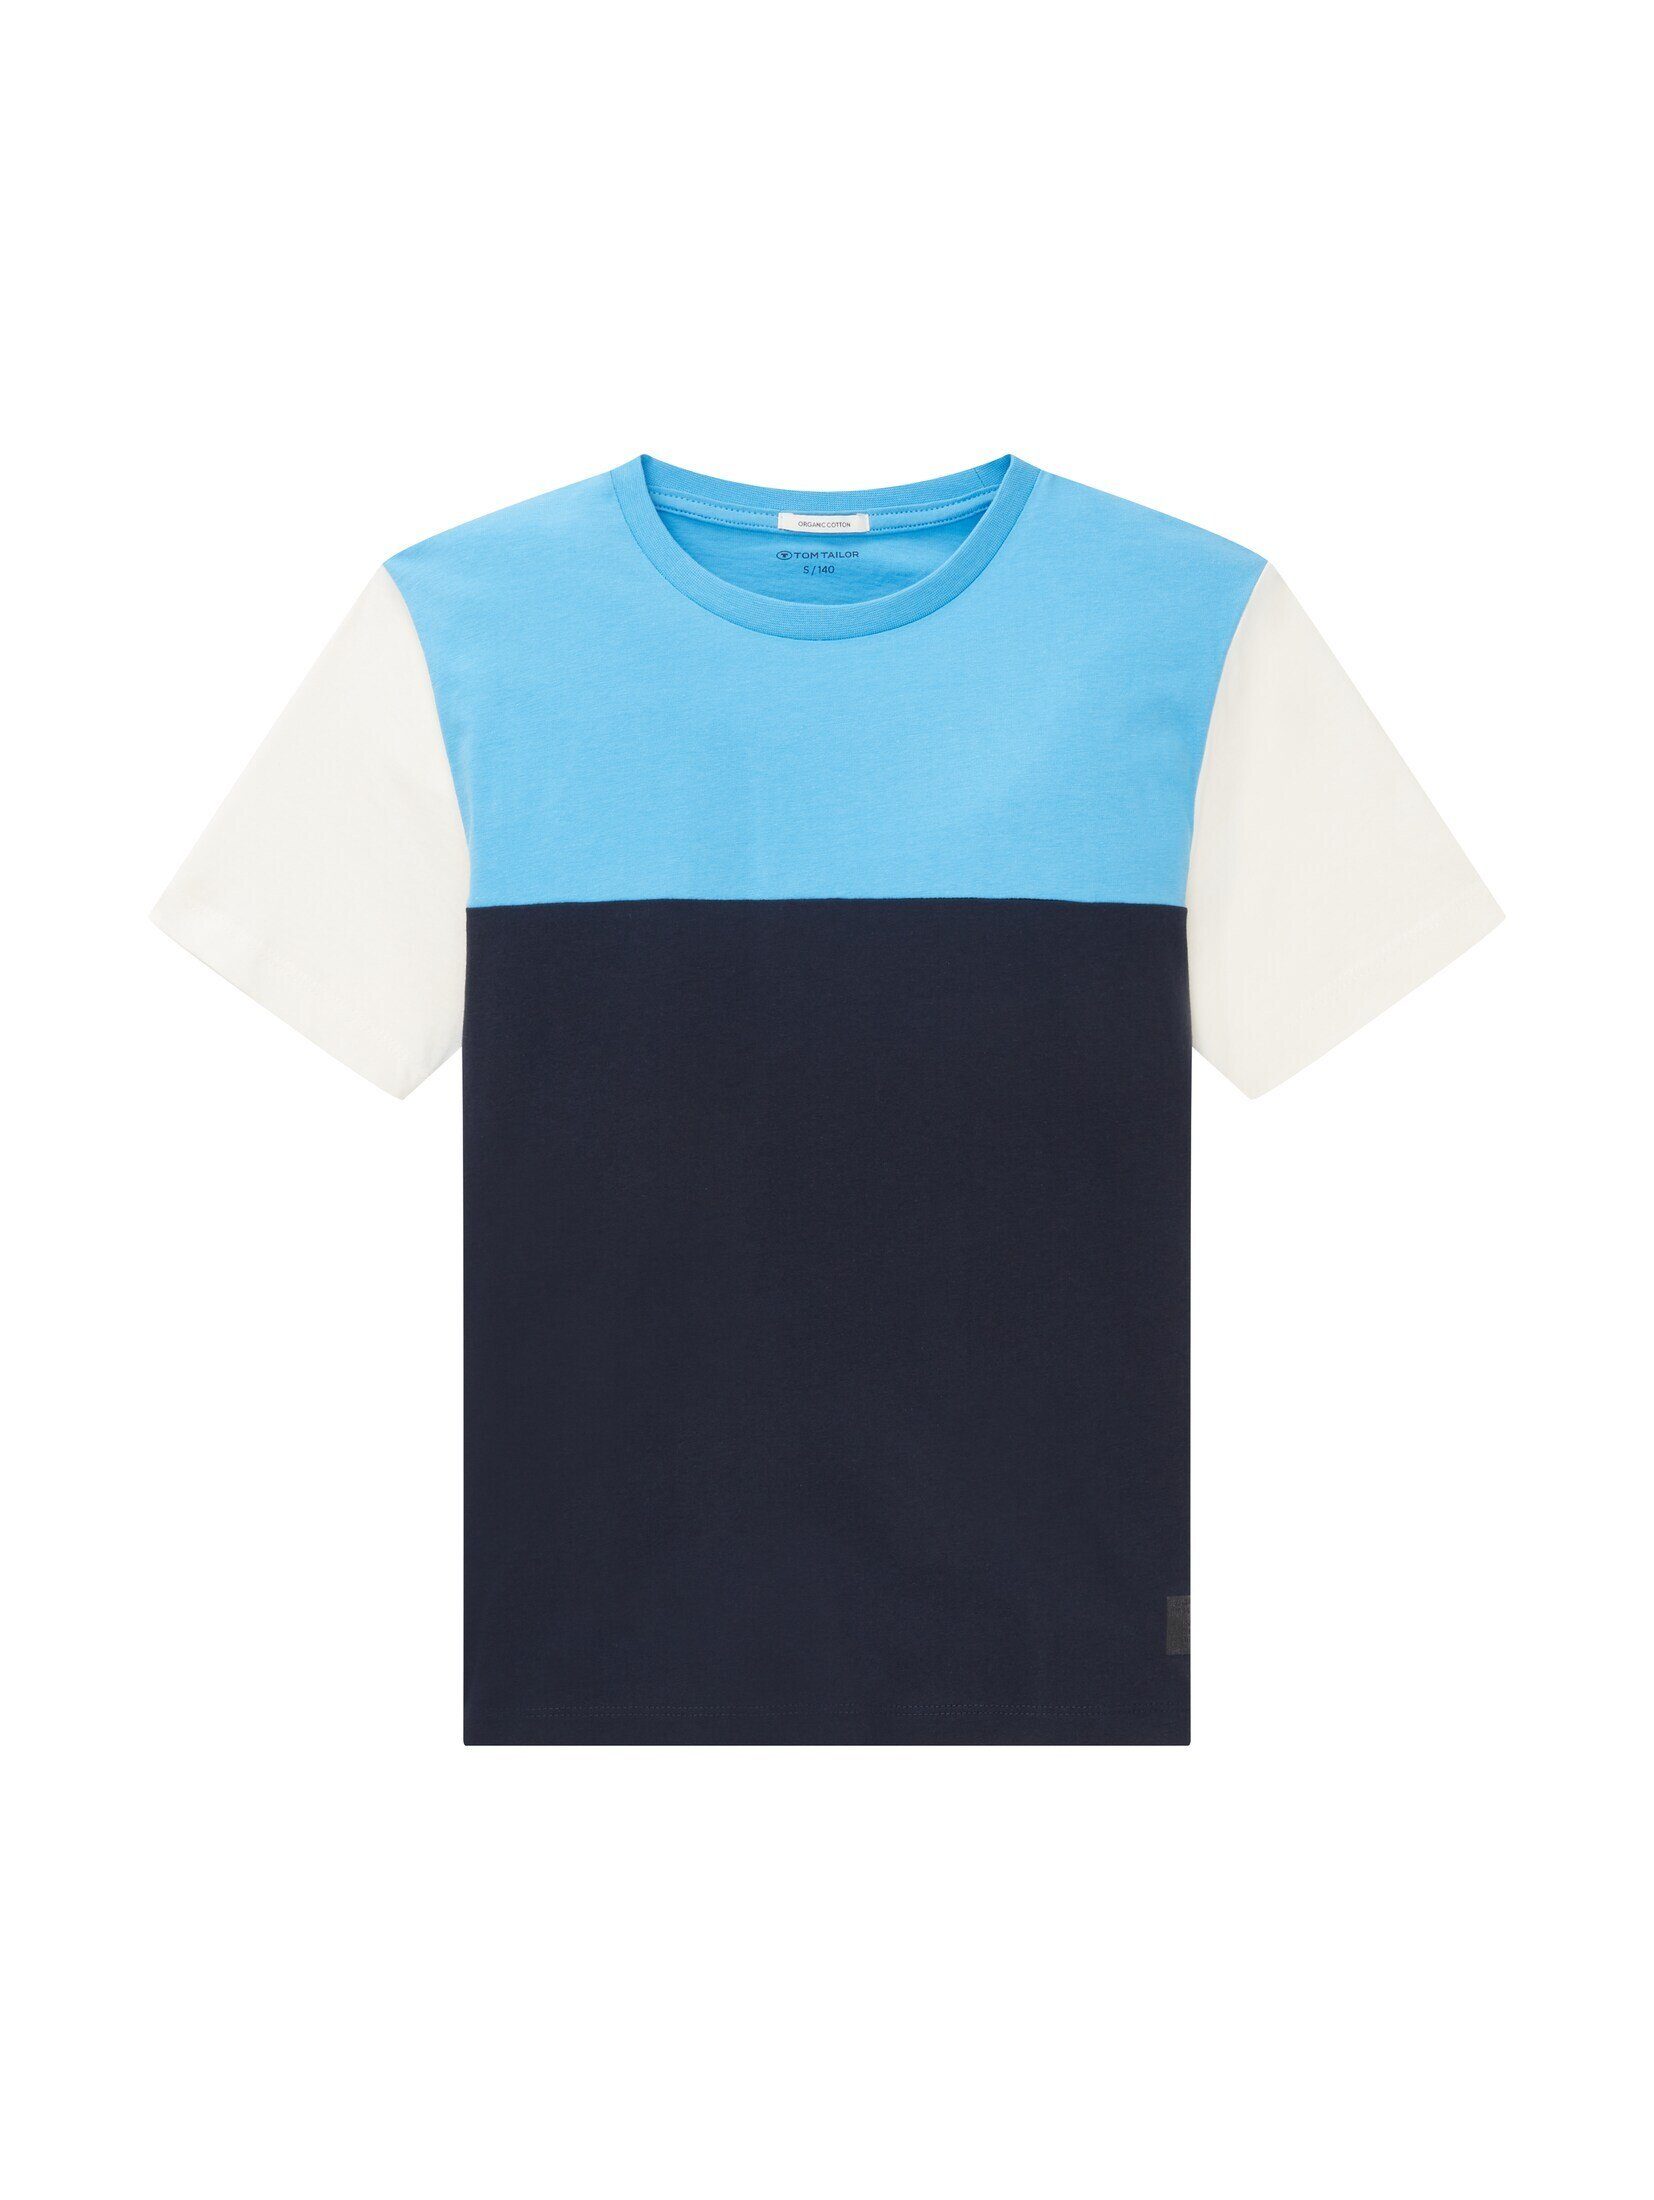 sky Blocking TAILOR blue mit TOM Colour T-Shirt captain T-Shirt